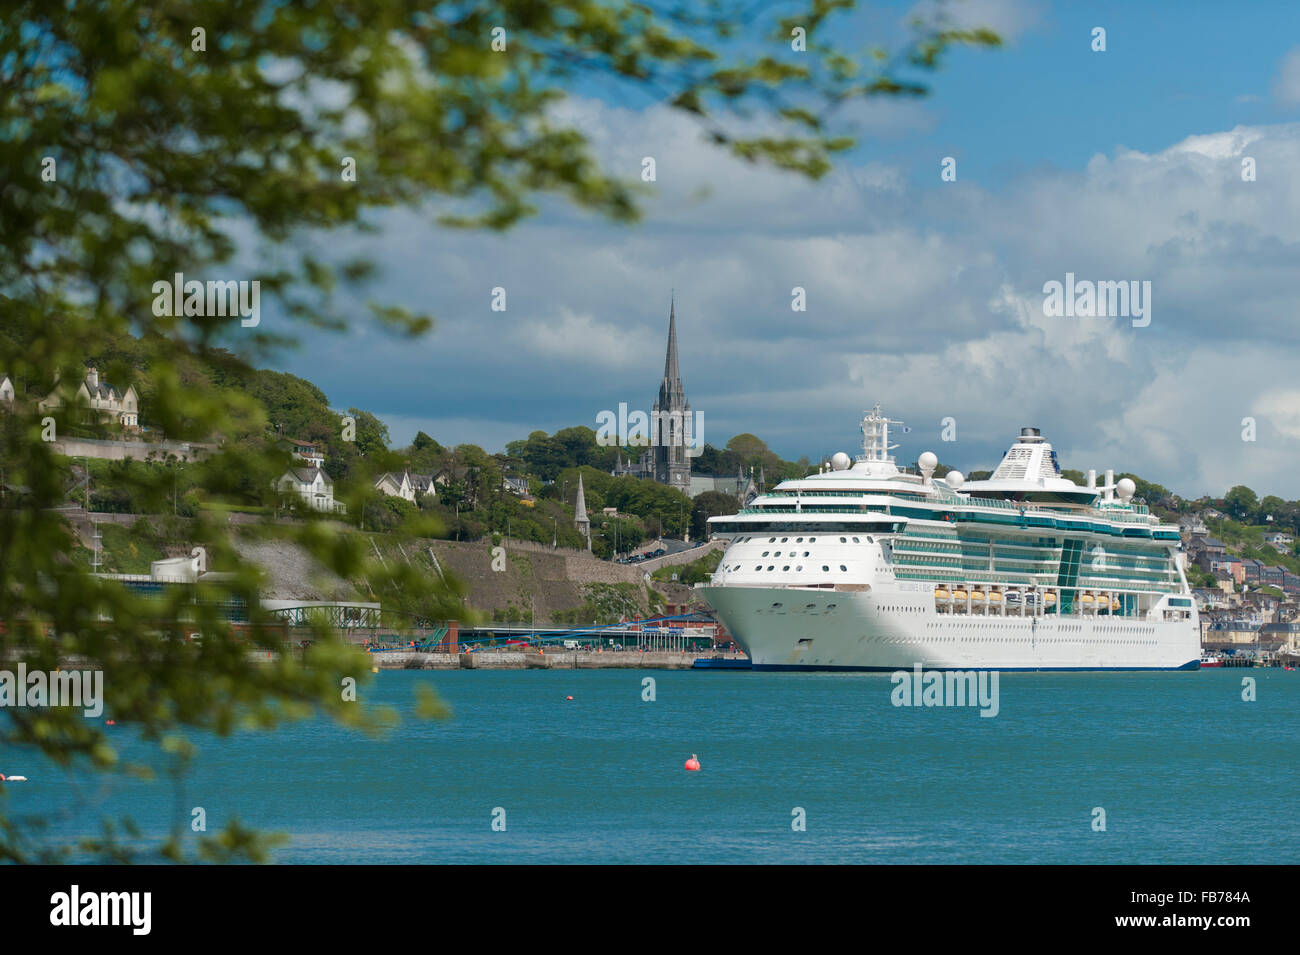 Royal Caribbean Kreuzfahrtschiff vor "Brilliance of the Seas" in Cobh Cruise Terminal, Hafen von Cork, Irland Anker Stockfoto